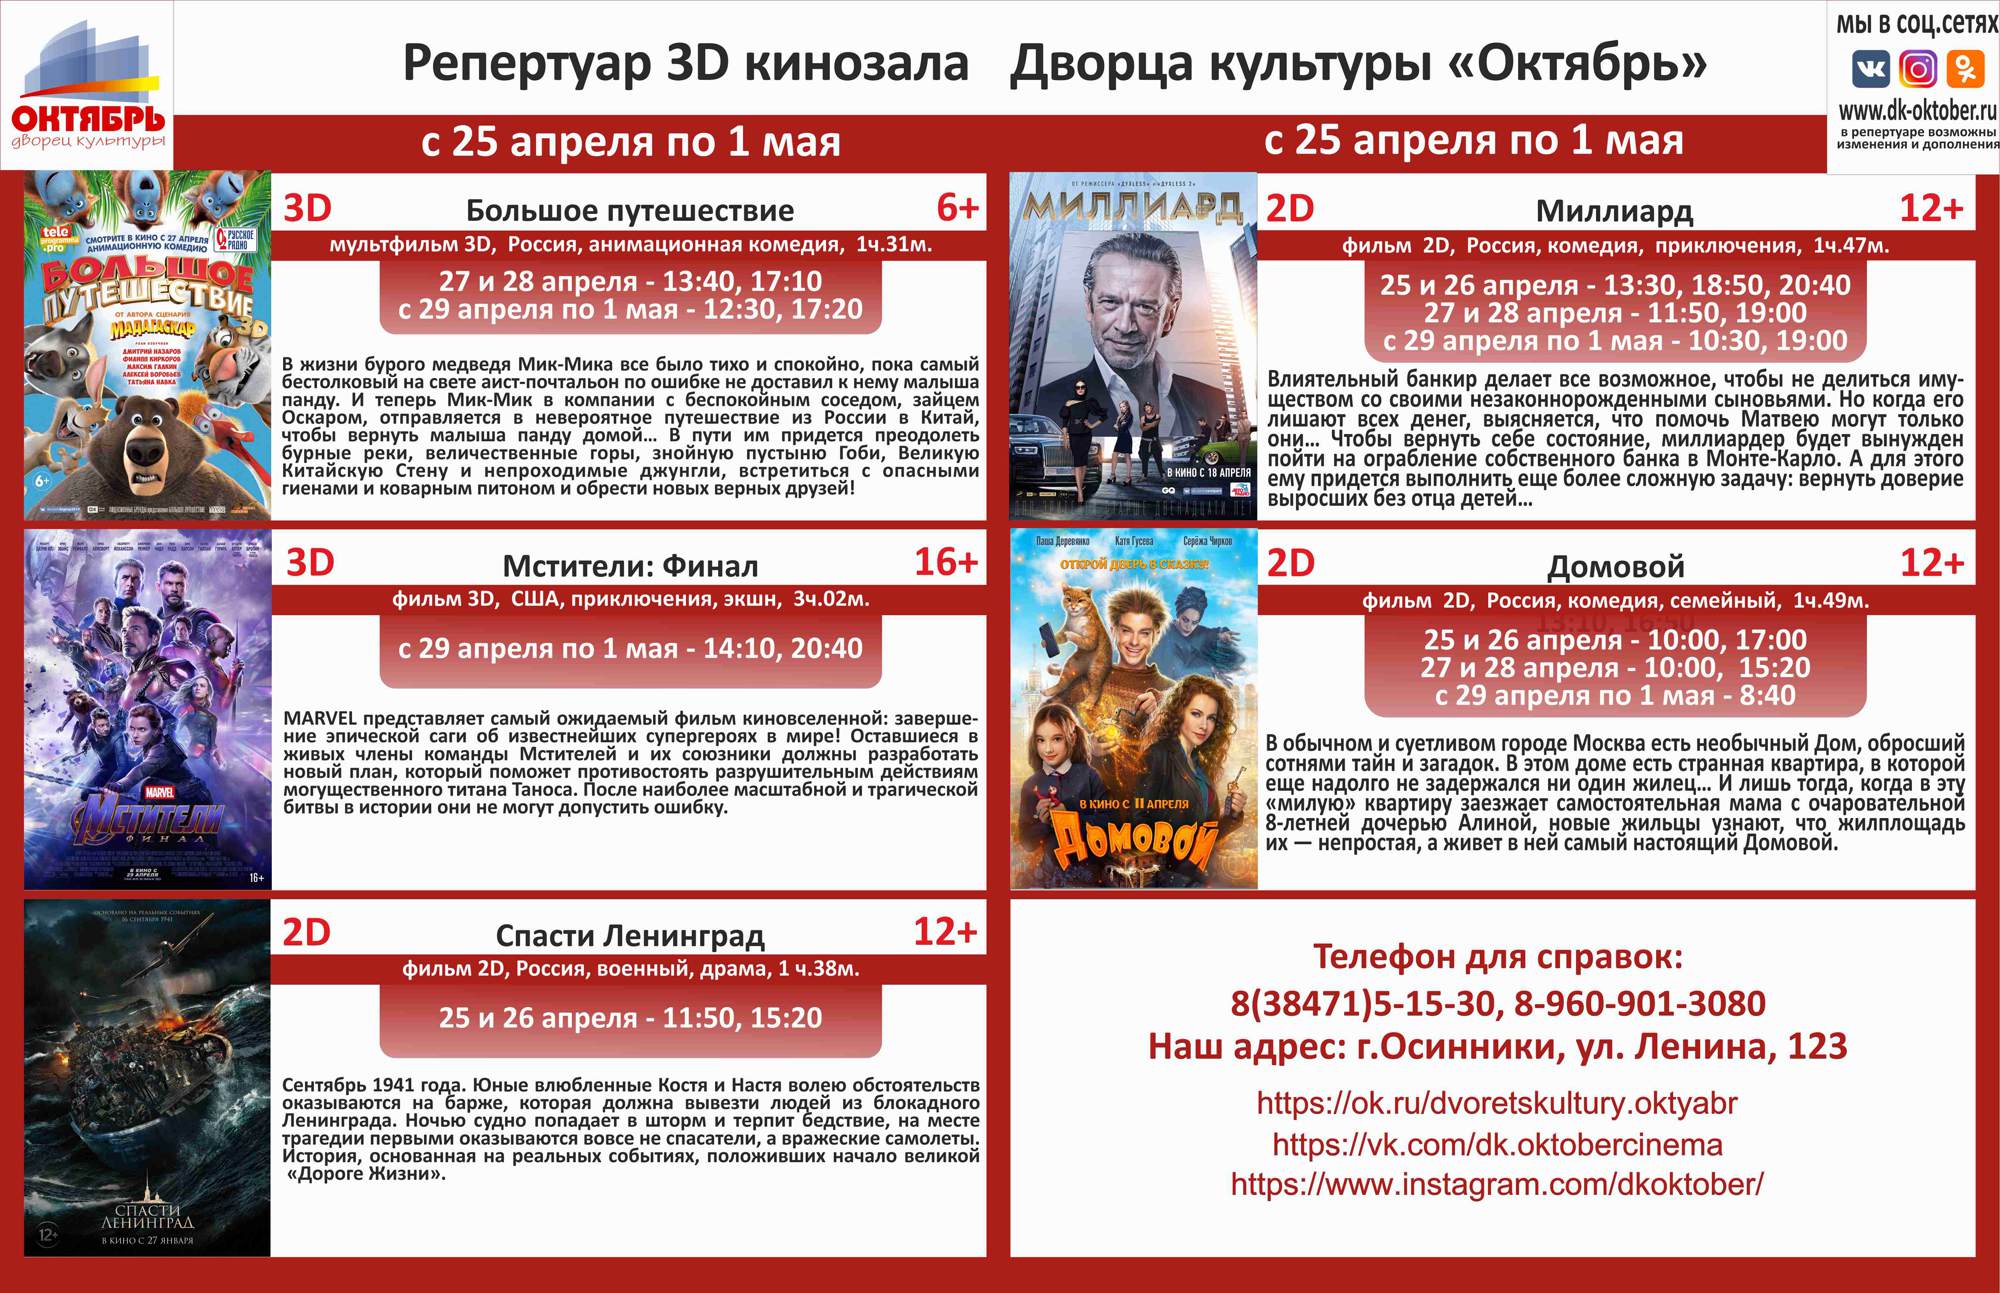 Анонс сеансов с 25 апреля по 1 мая кинозала ДК "Октябрь"